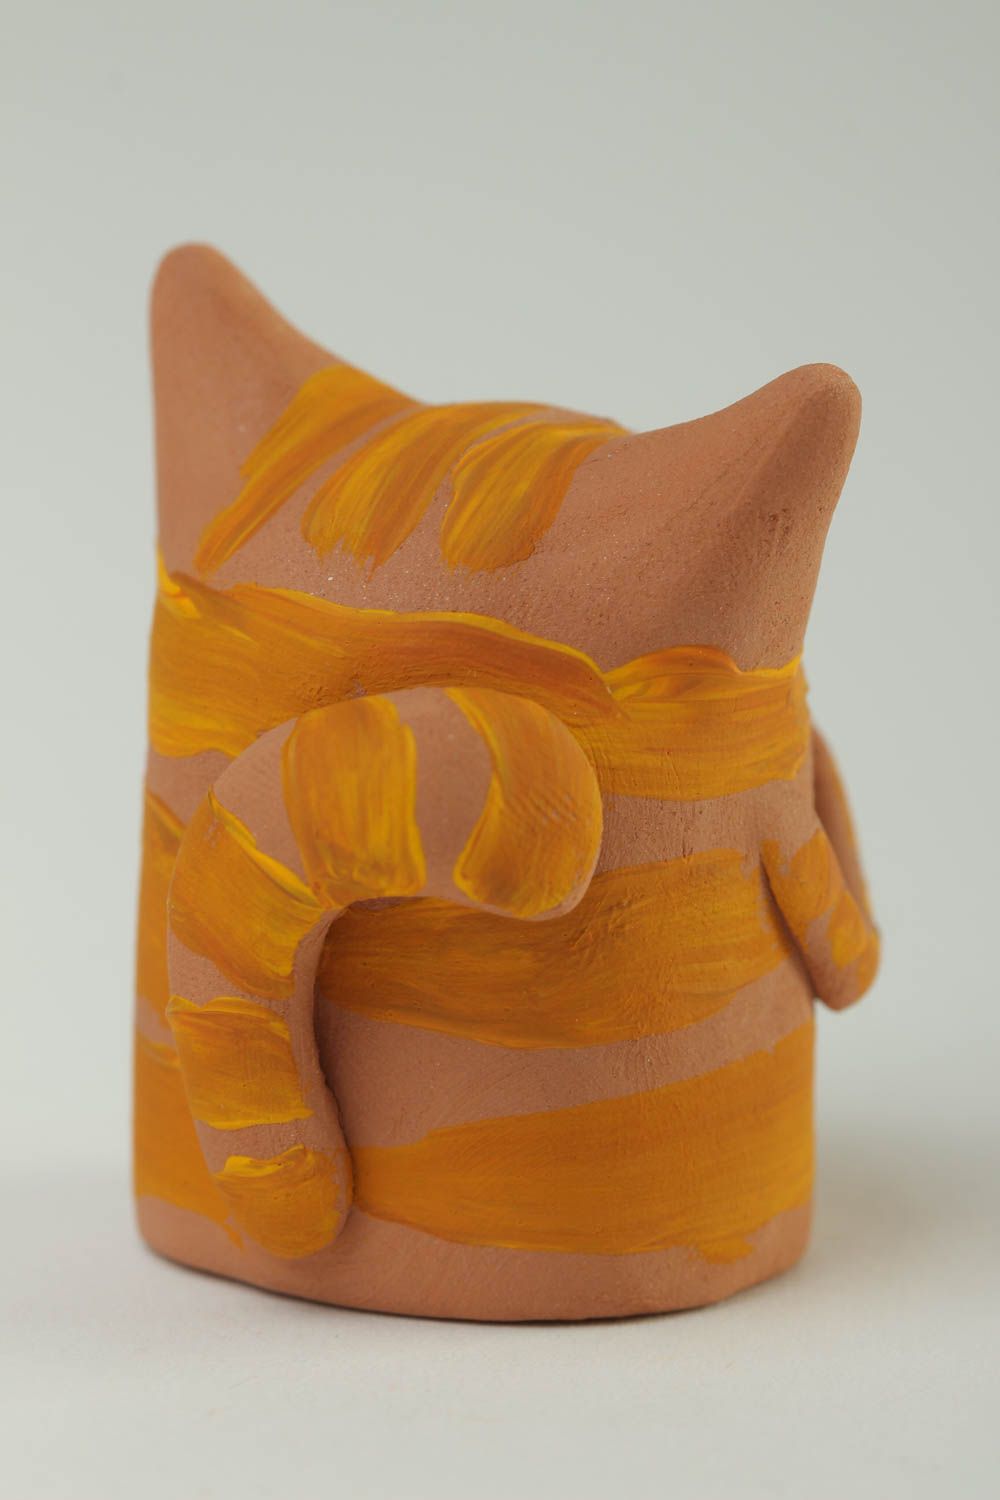 Статуэтка ручной работы глиняная статуэтка фигурка животного Коричневый котенок фото 4